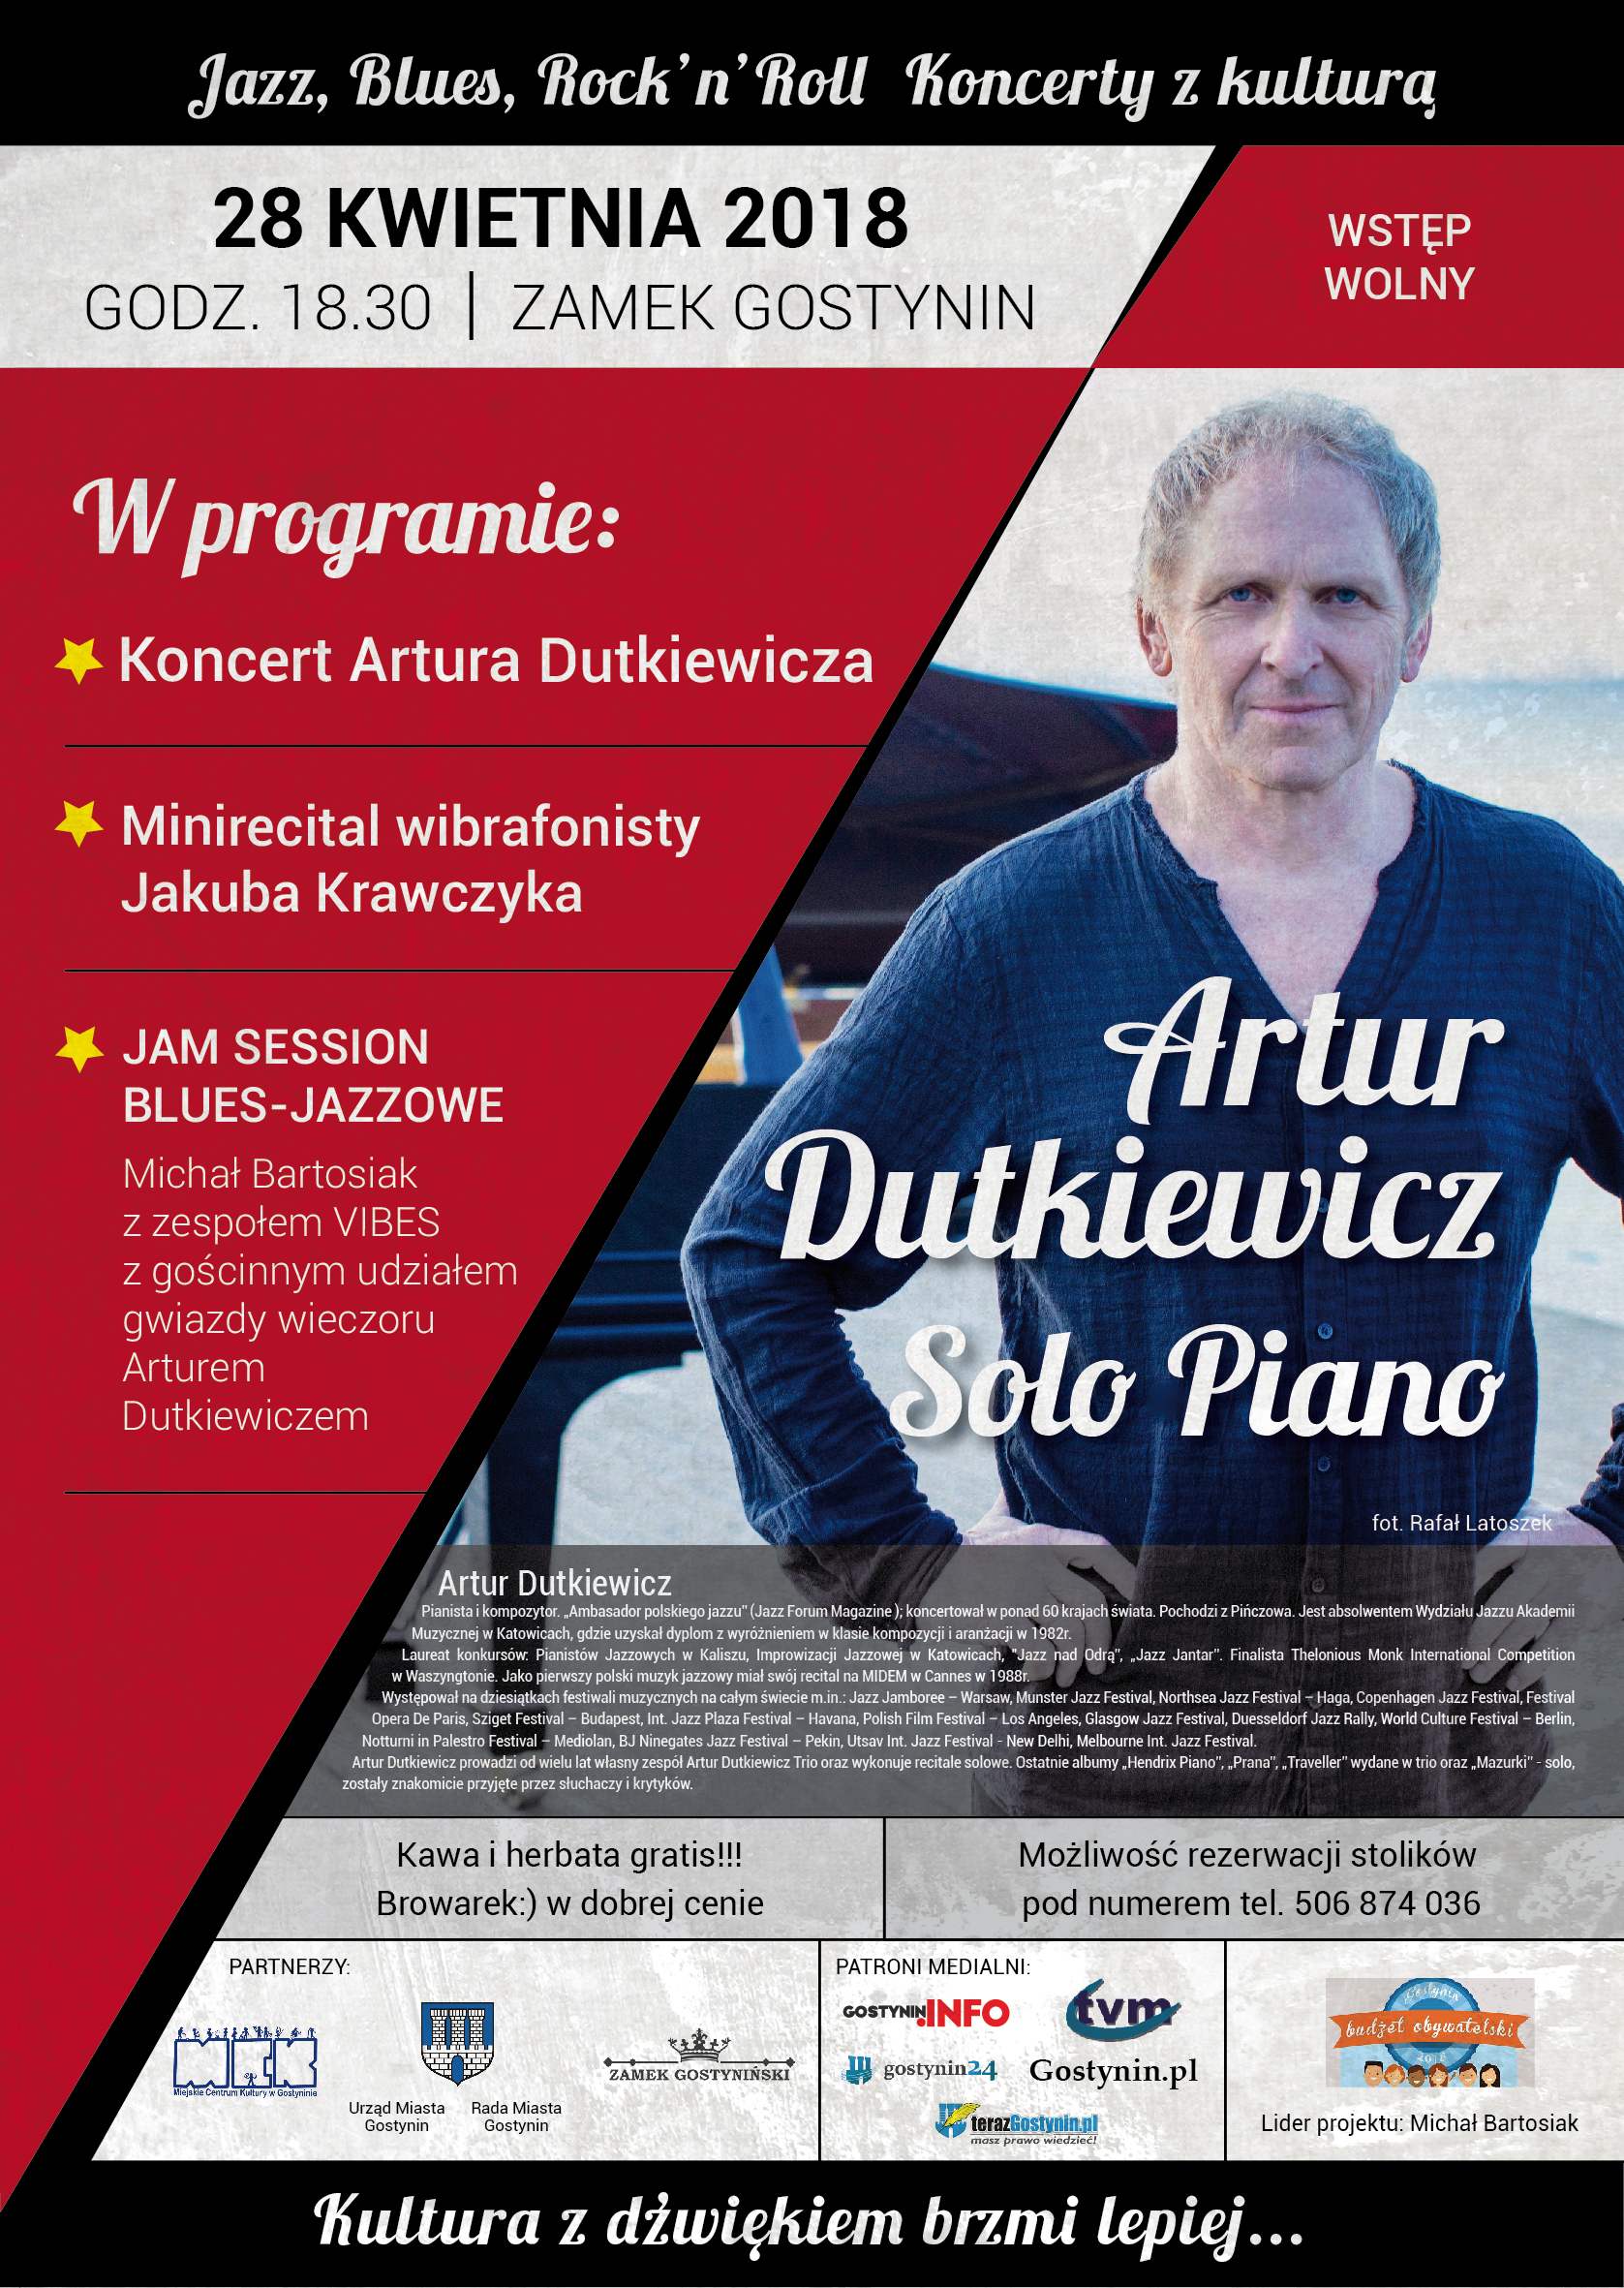 Artur Dutkiewicz Solo Piano